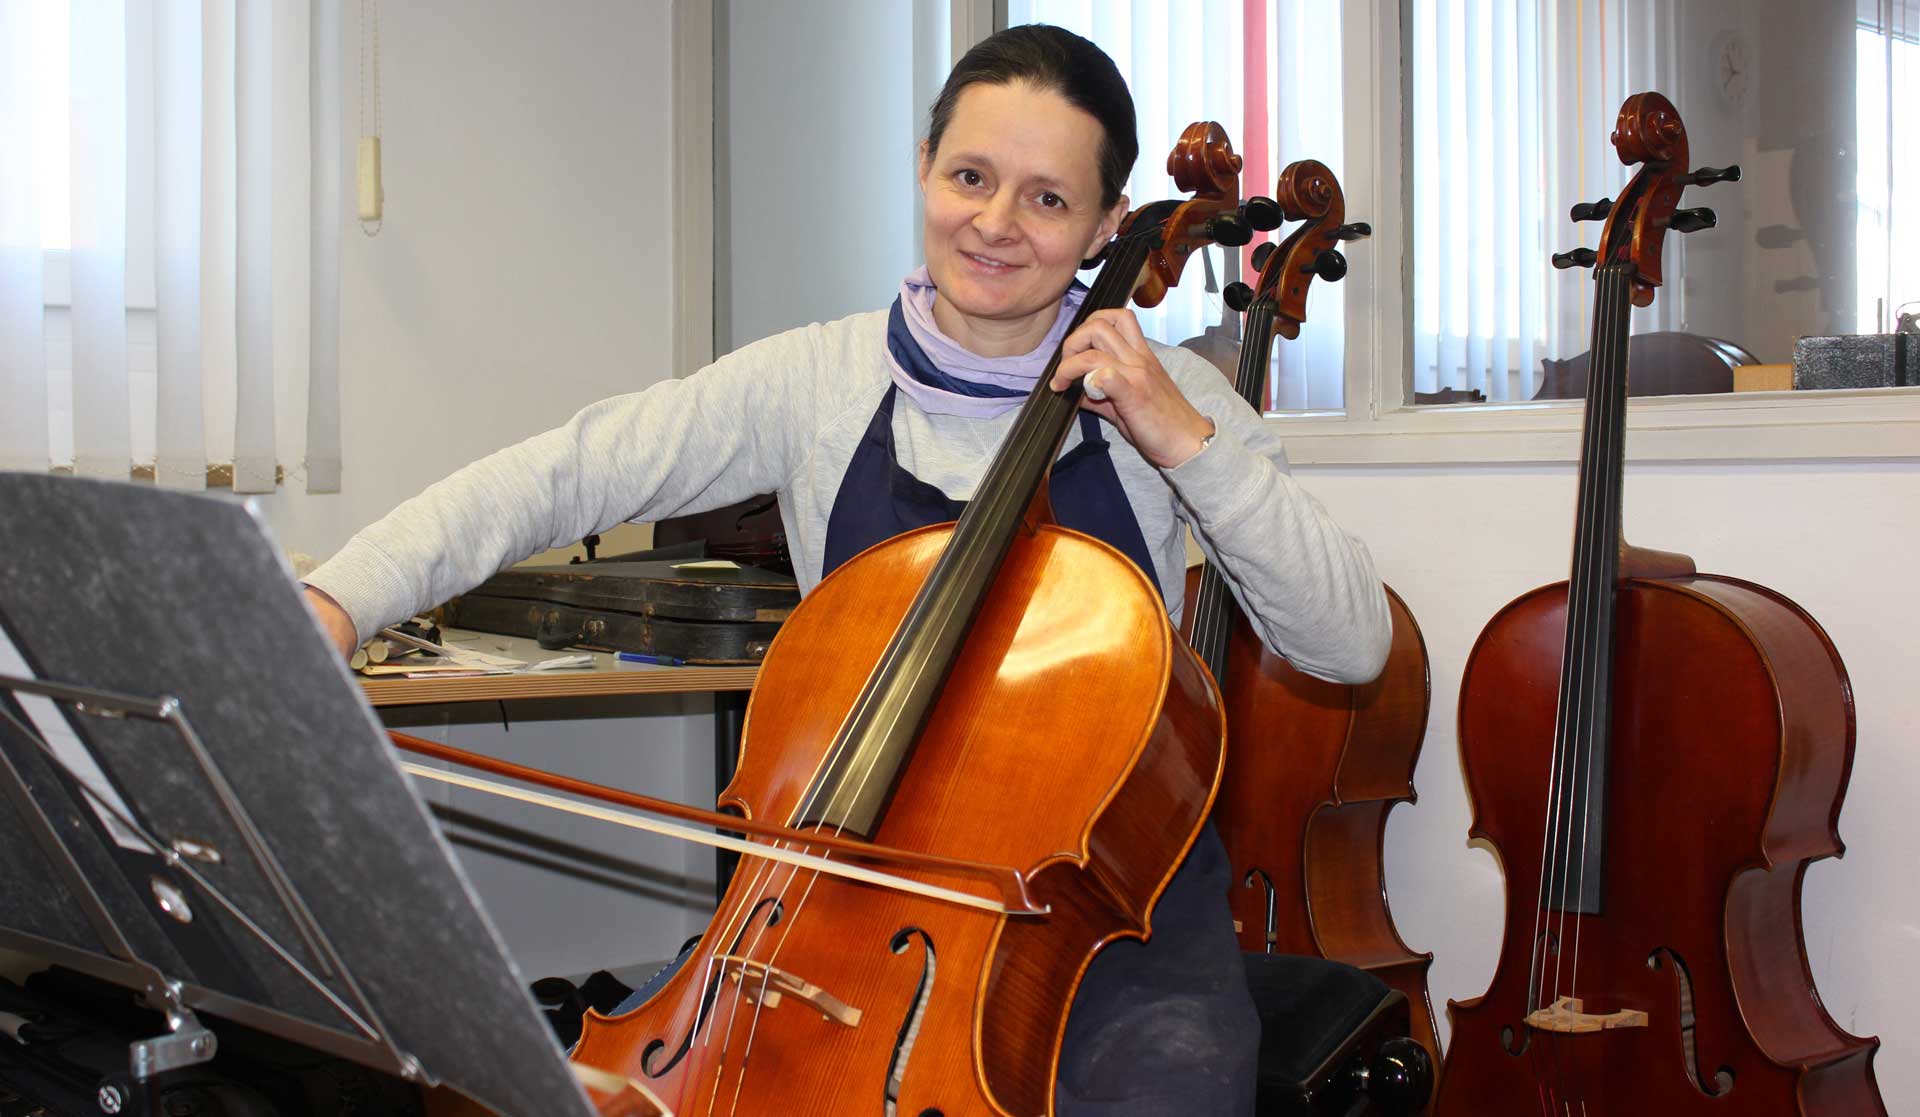 Die Geigenbauerin und leidenschaftliche Cellospielerin Judith Bauer aus Weiden in der Oberpfalz lebte und arbeitete lange Zeit in Italien, Frankreich und Portugal. (Foto: obx-news/HWKNO)